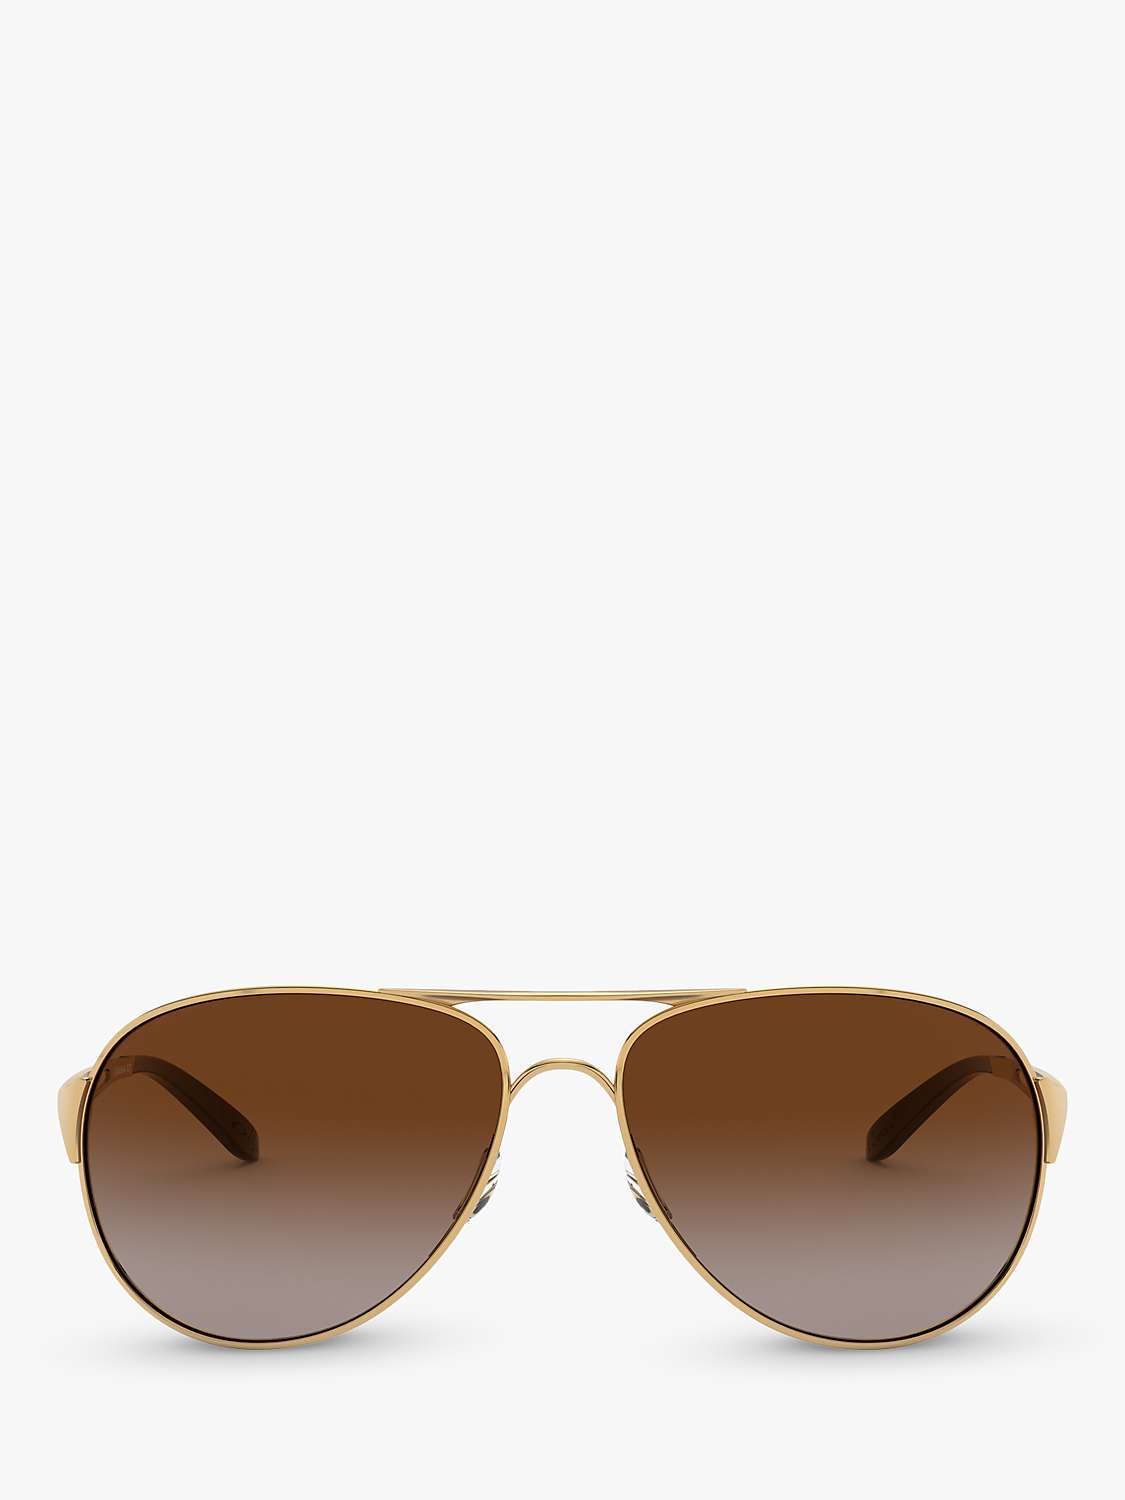 Buy Oakley OO4054 Women's Caveat Pilot Sunglasses, Gold/Brown Gradient Online at johnlewis.com